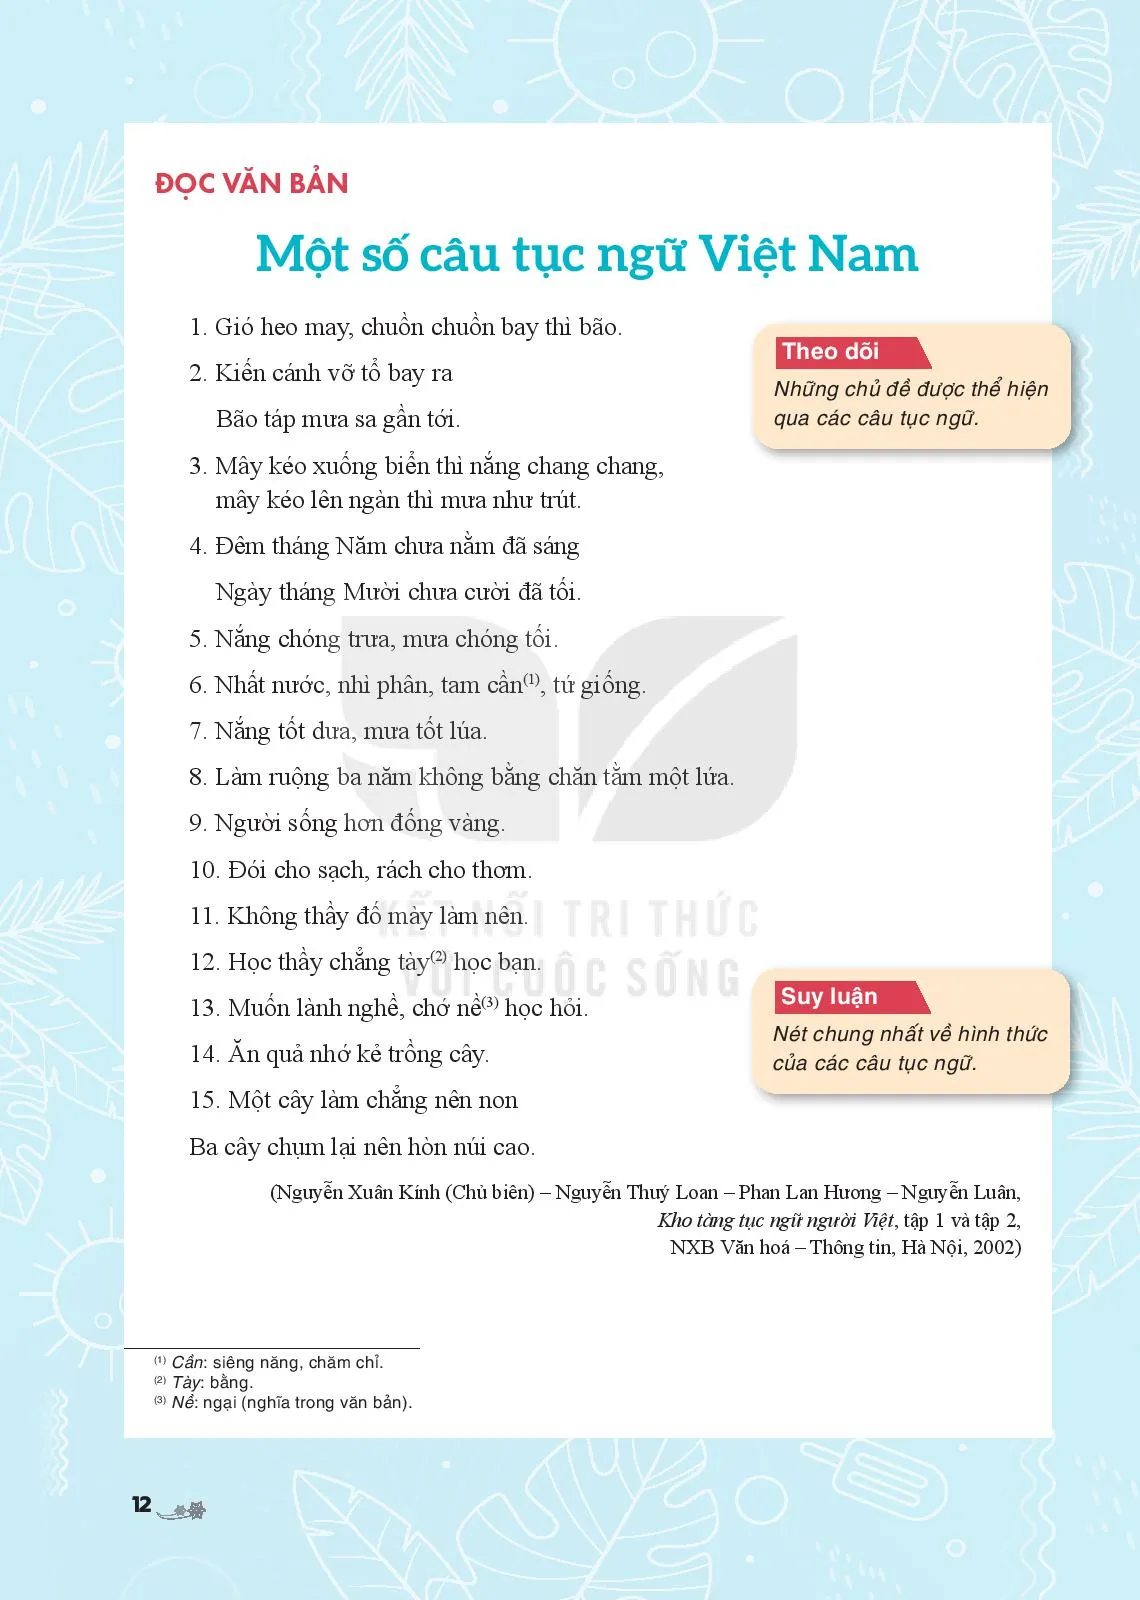 Một số câu tục ngữ Việt Nam